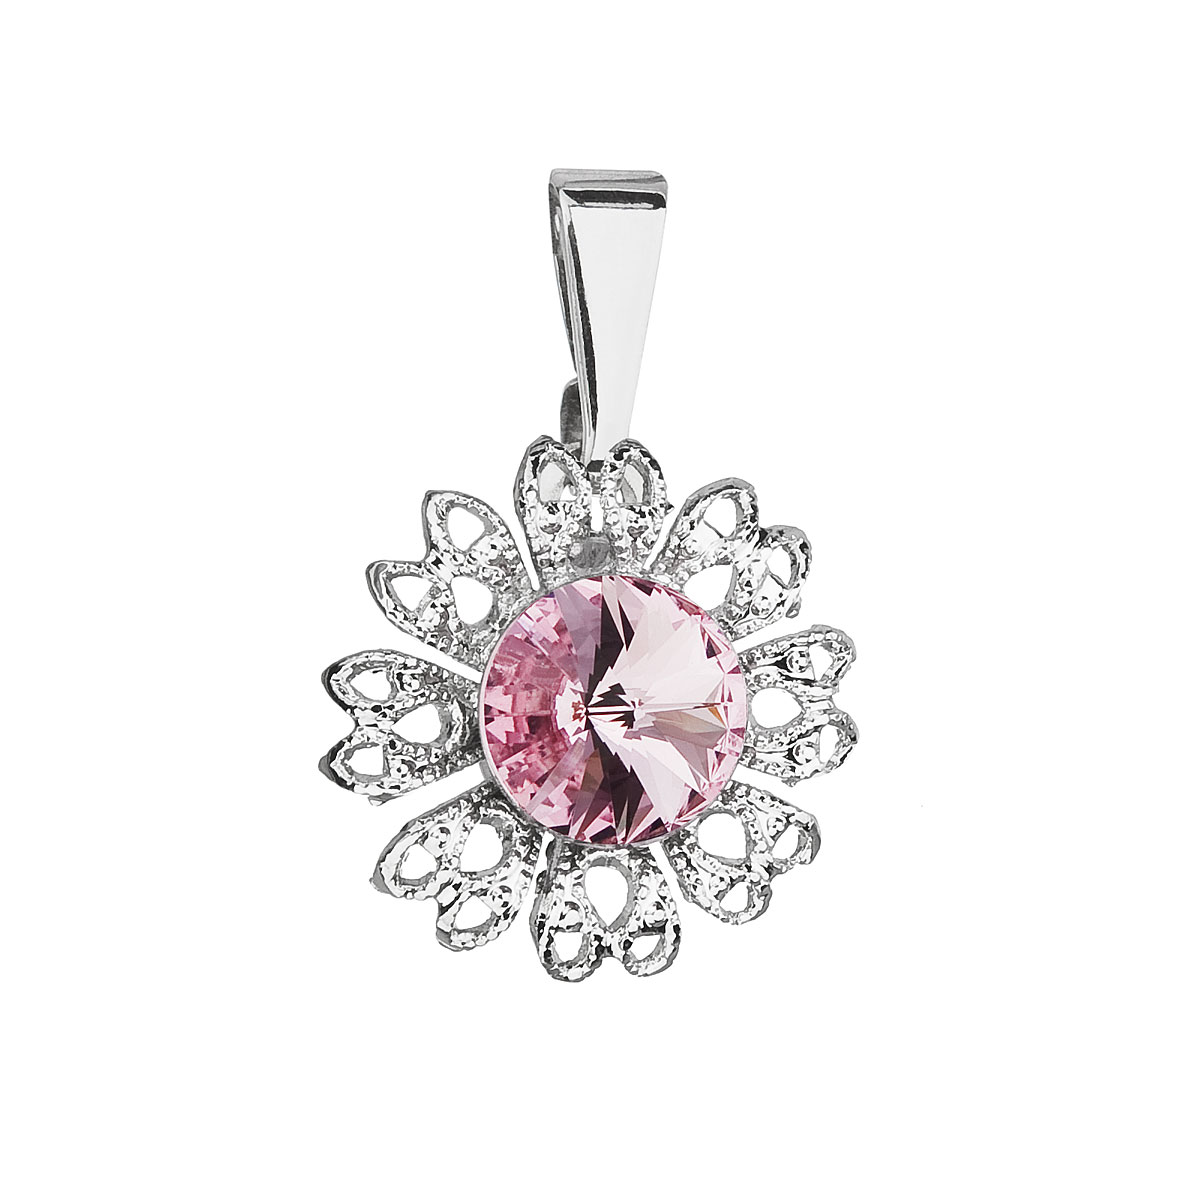 Evolution Group Přívěsek bižuterie se Swarovski krystaly růžová kytička 54032.3 light rose